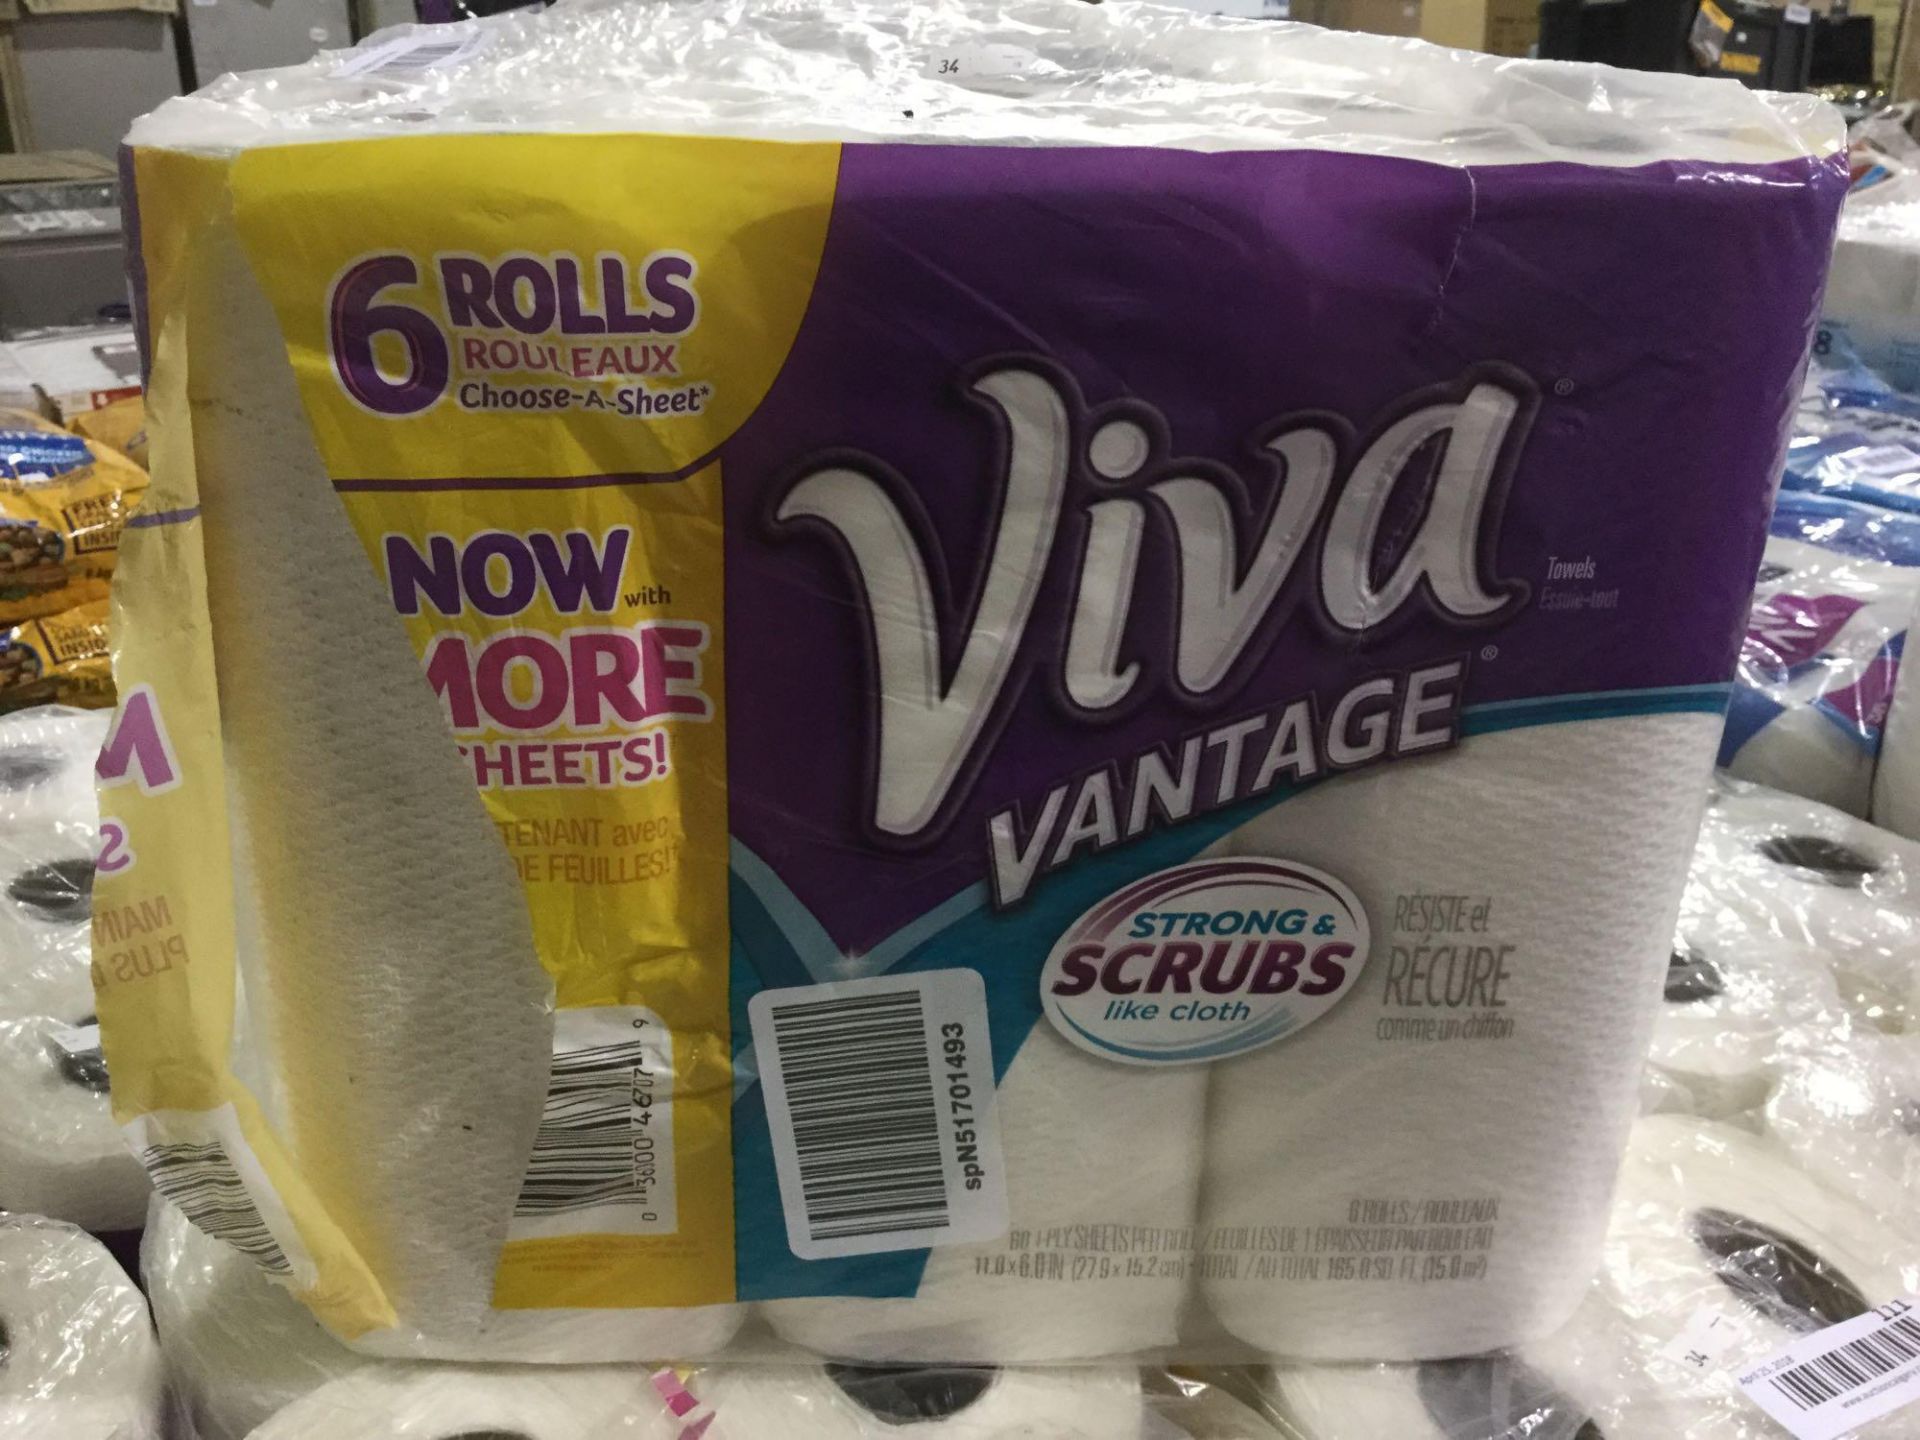 Package of 6 Viva Vantage Paper towel Rolls